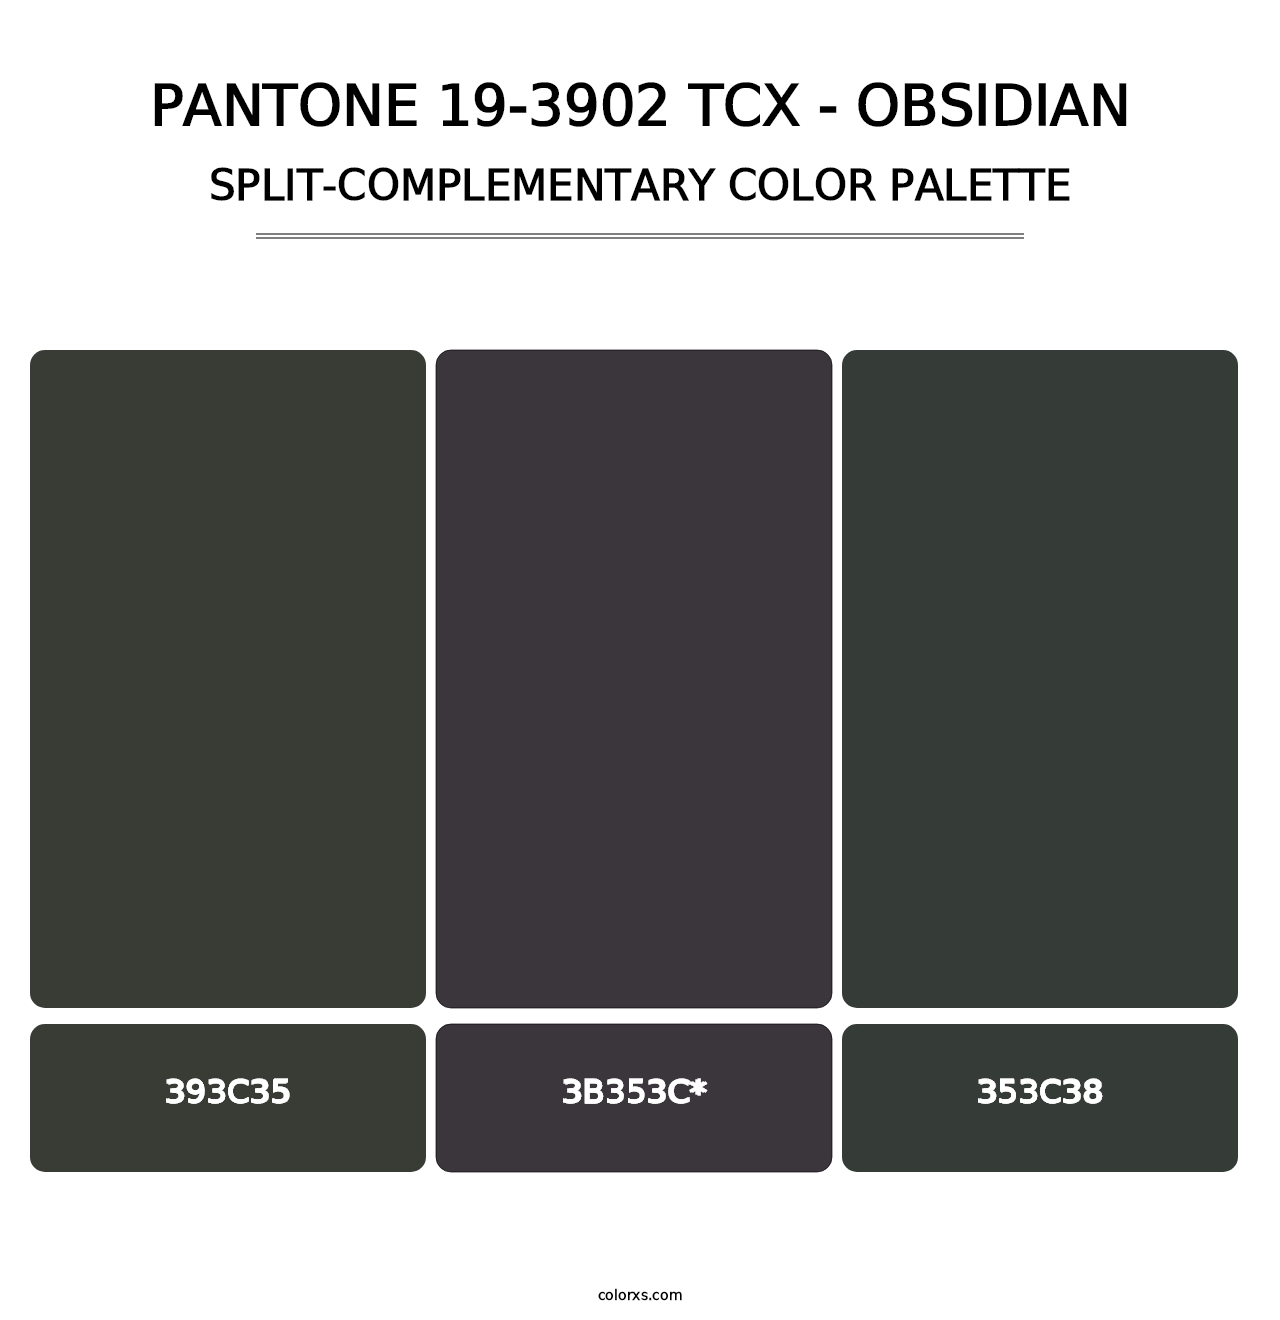 PANTONE 19-3902 TCX - Obsidian - Split-Complementary Color Palette